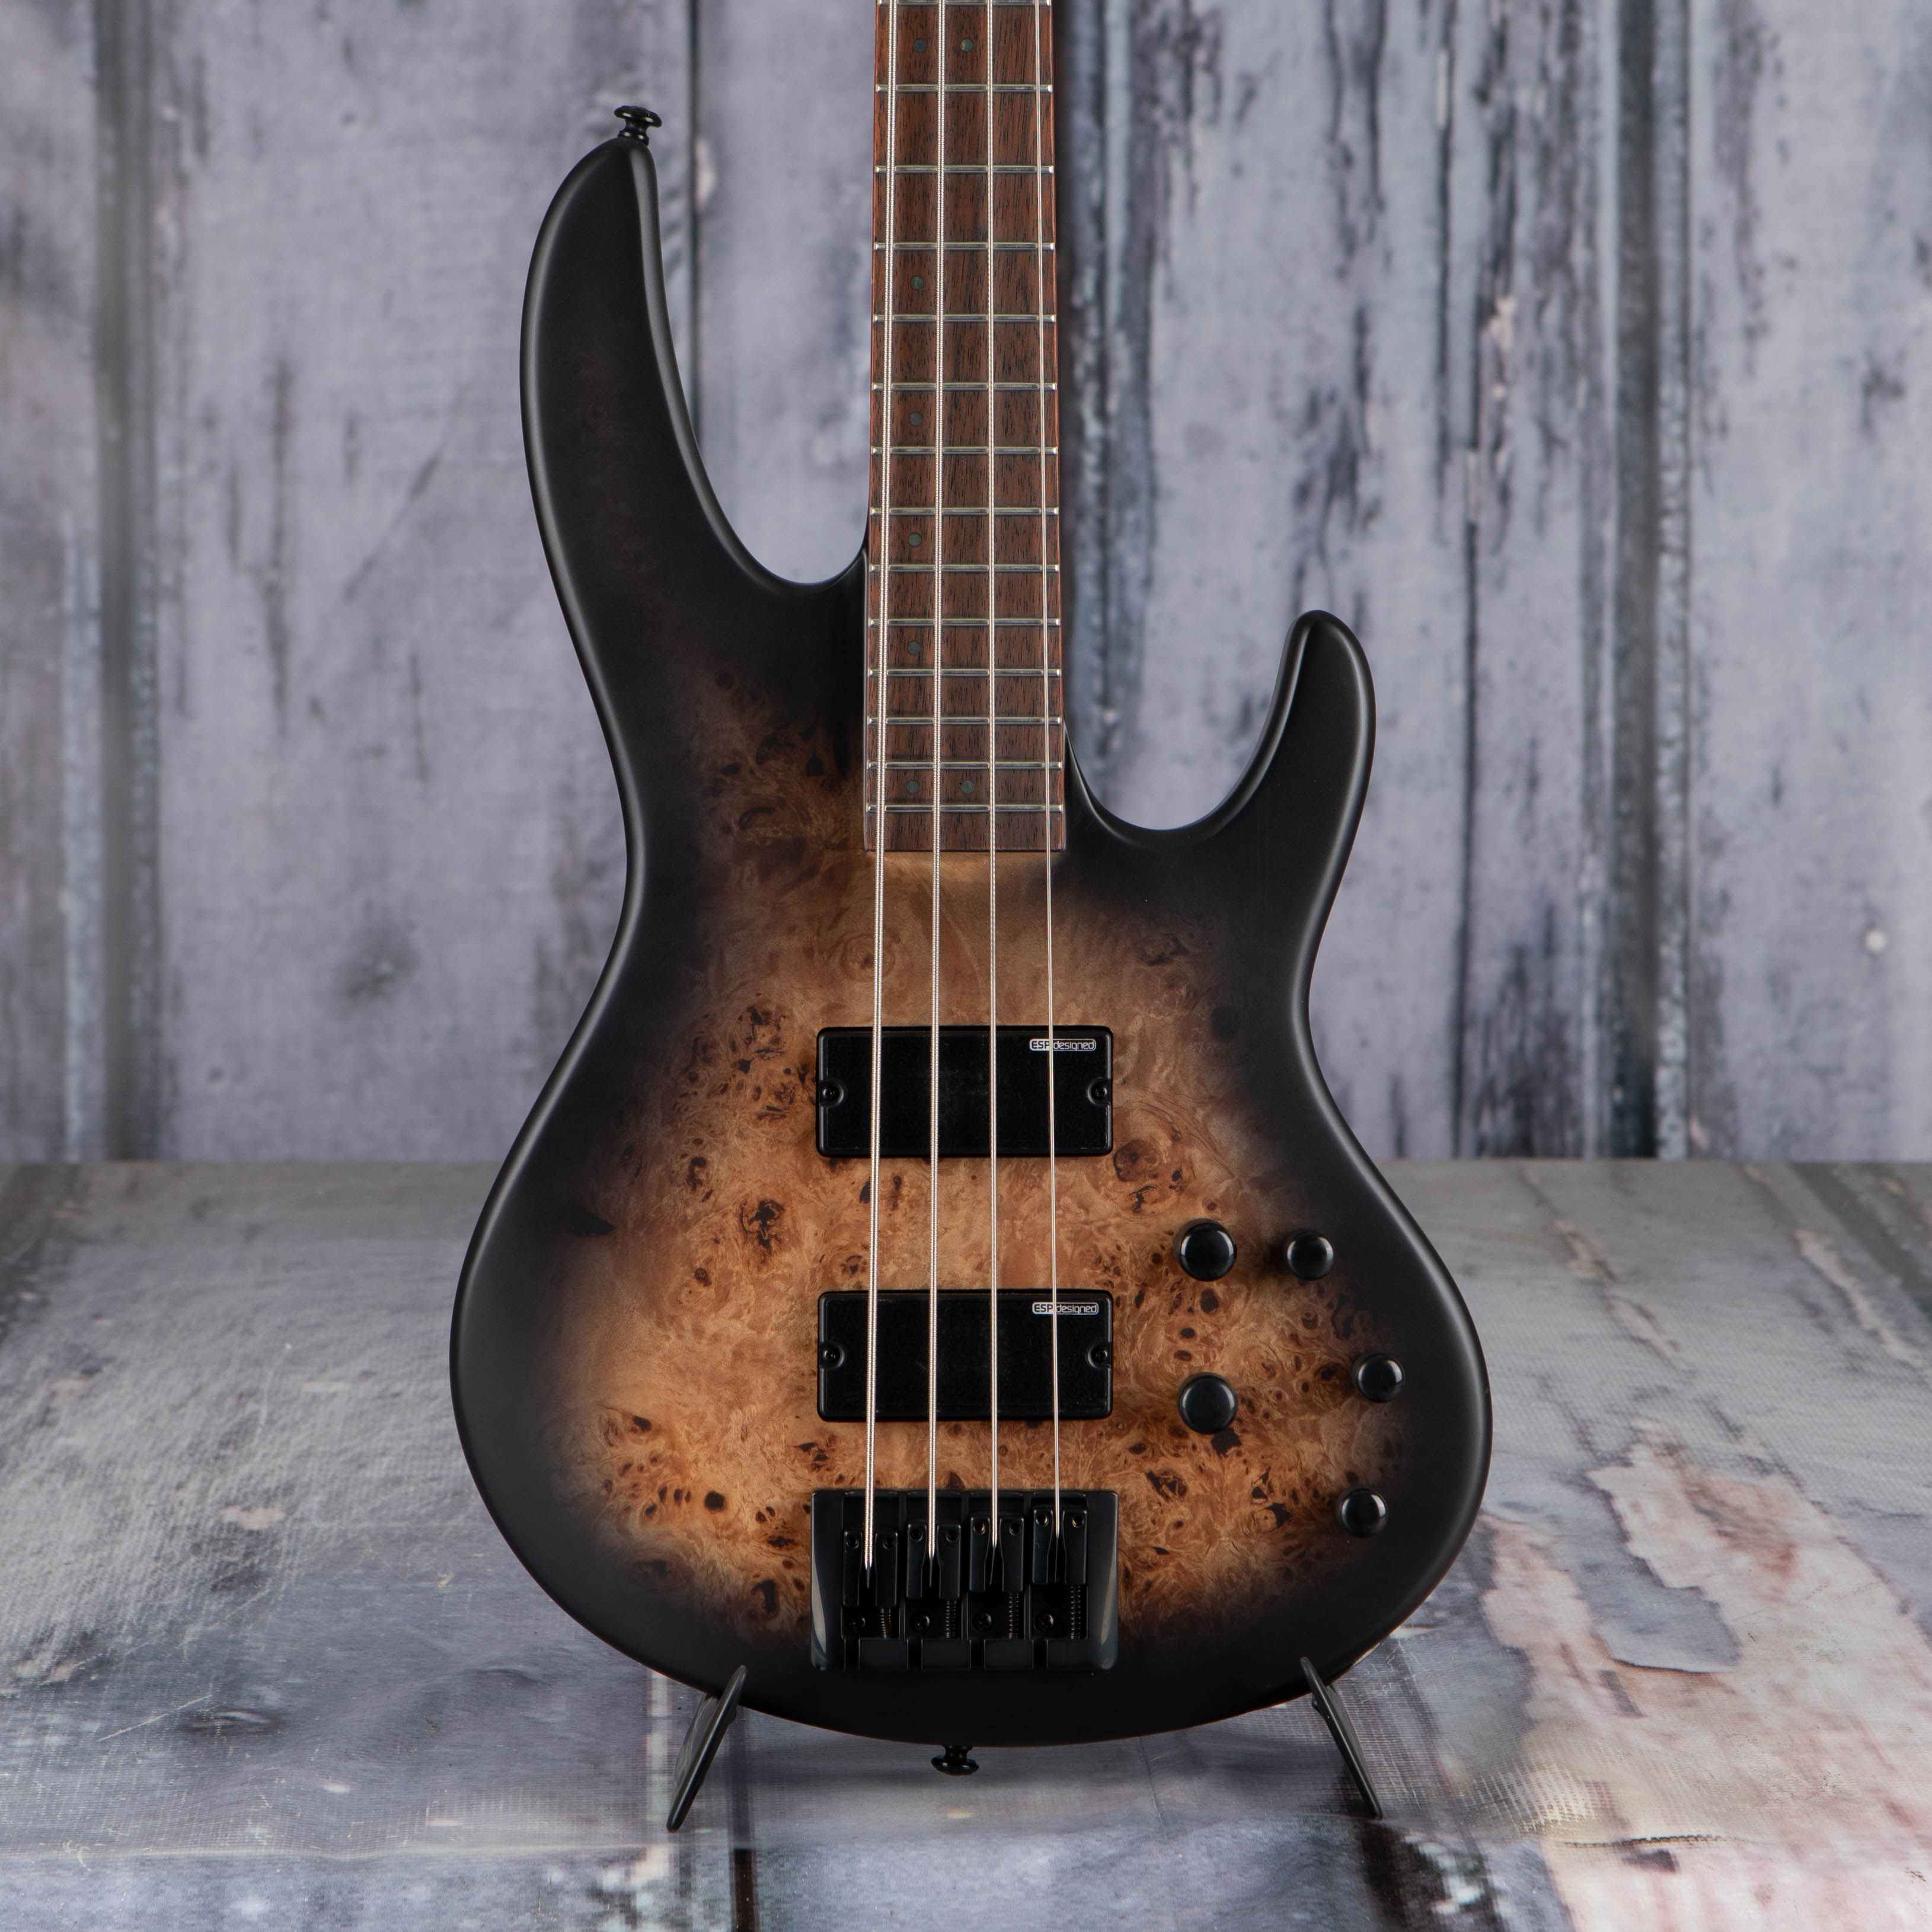 ESP LTD D-4 Electric Bass Guitar, Black Natural Burst Satin, front closeup